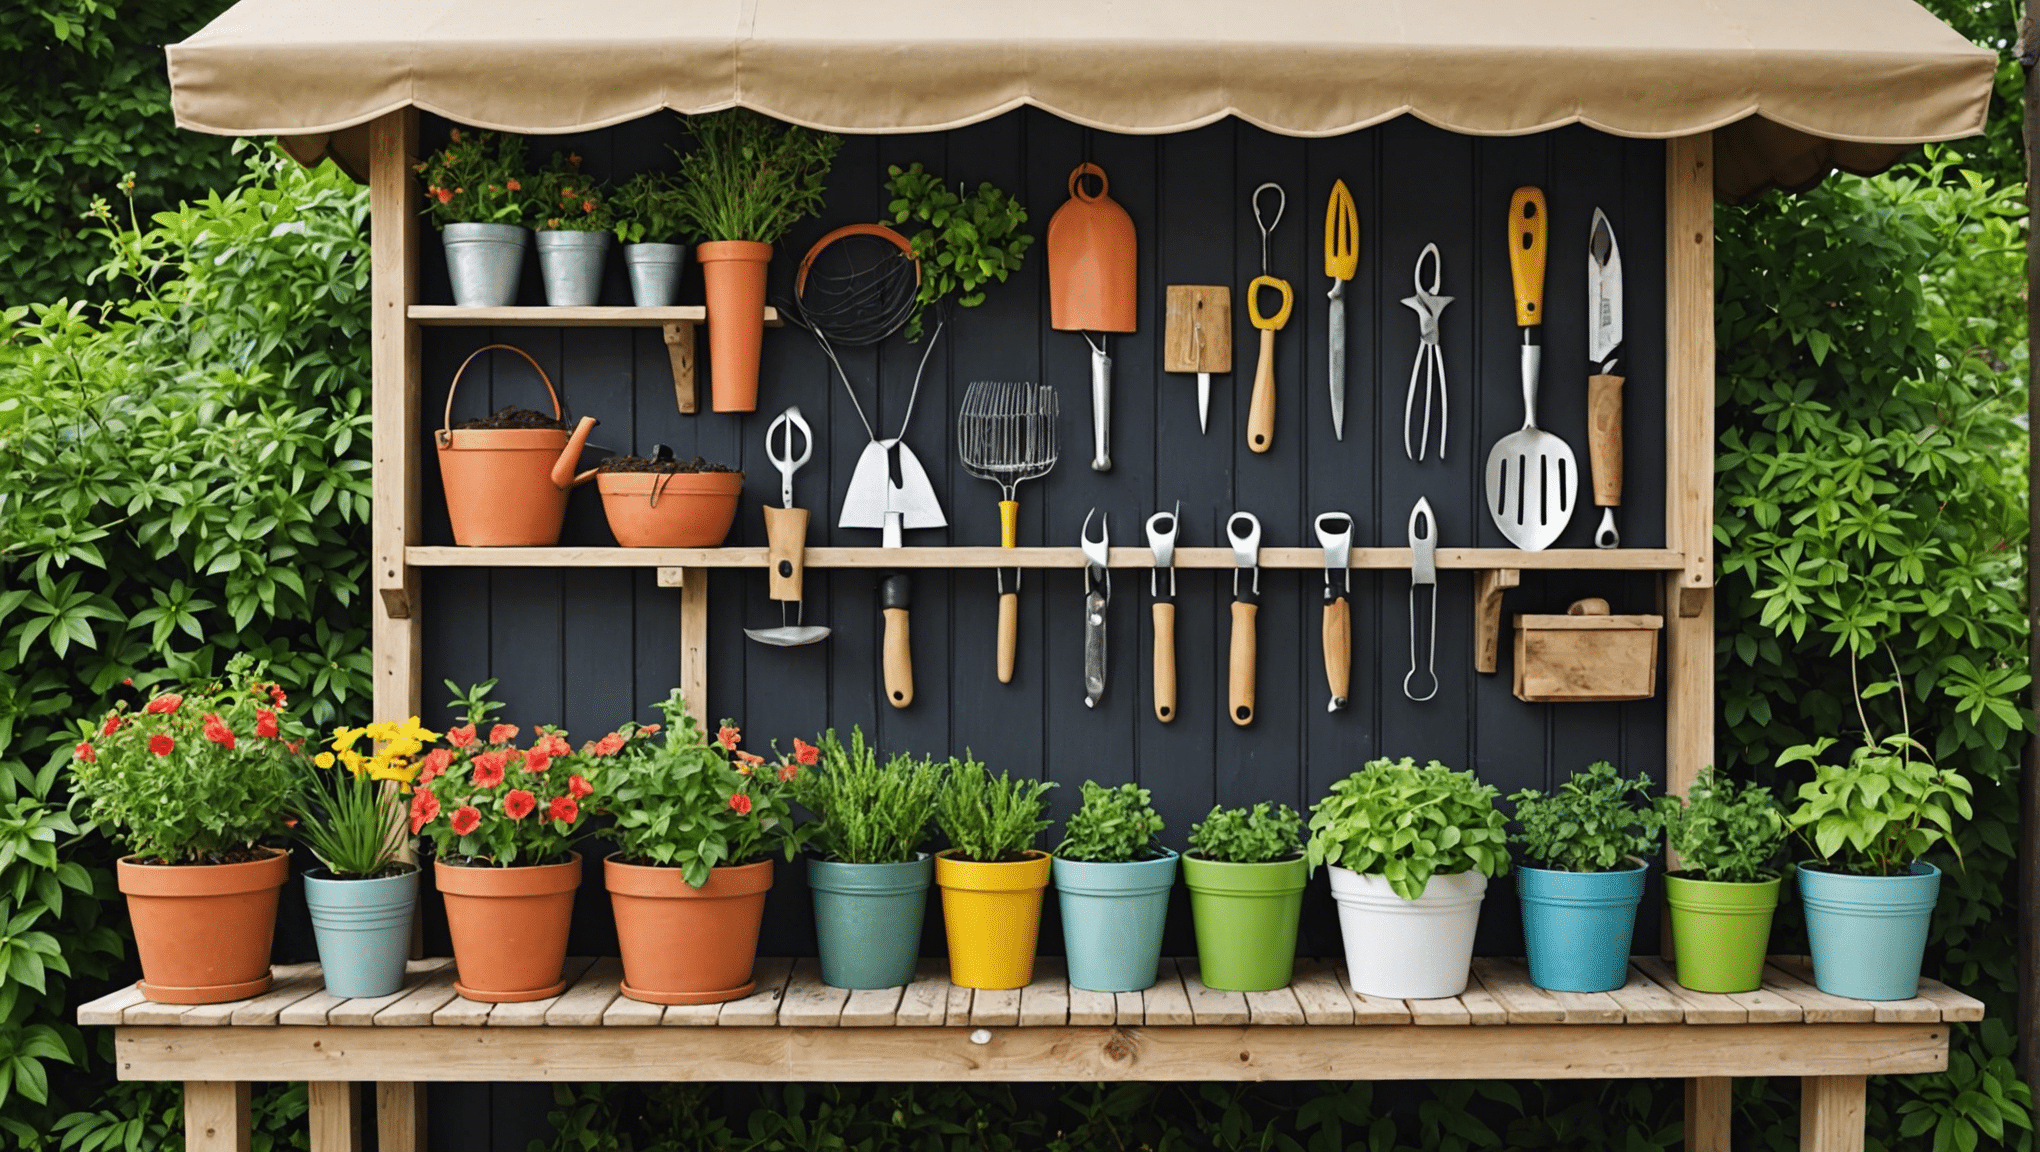 Entdecken Sie kreative Ideen zur Aufbewahrung von Gartengeräten, um Ihre Gartenausrüstung mit unseren hilfreichen Tipps und Lösungen geordnet und zugänglich aufzubewahren.